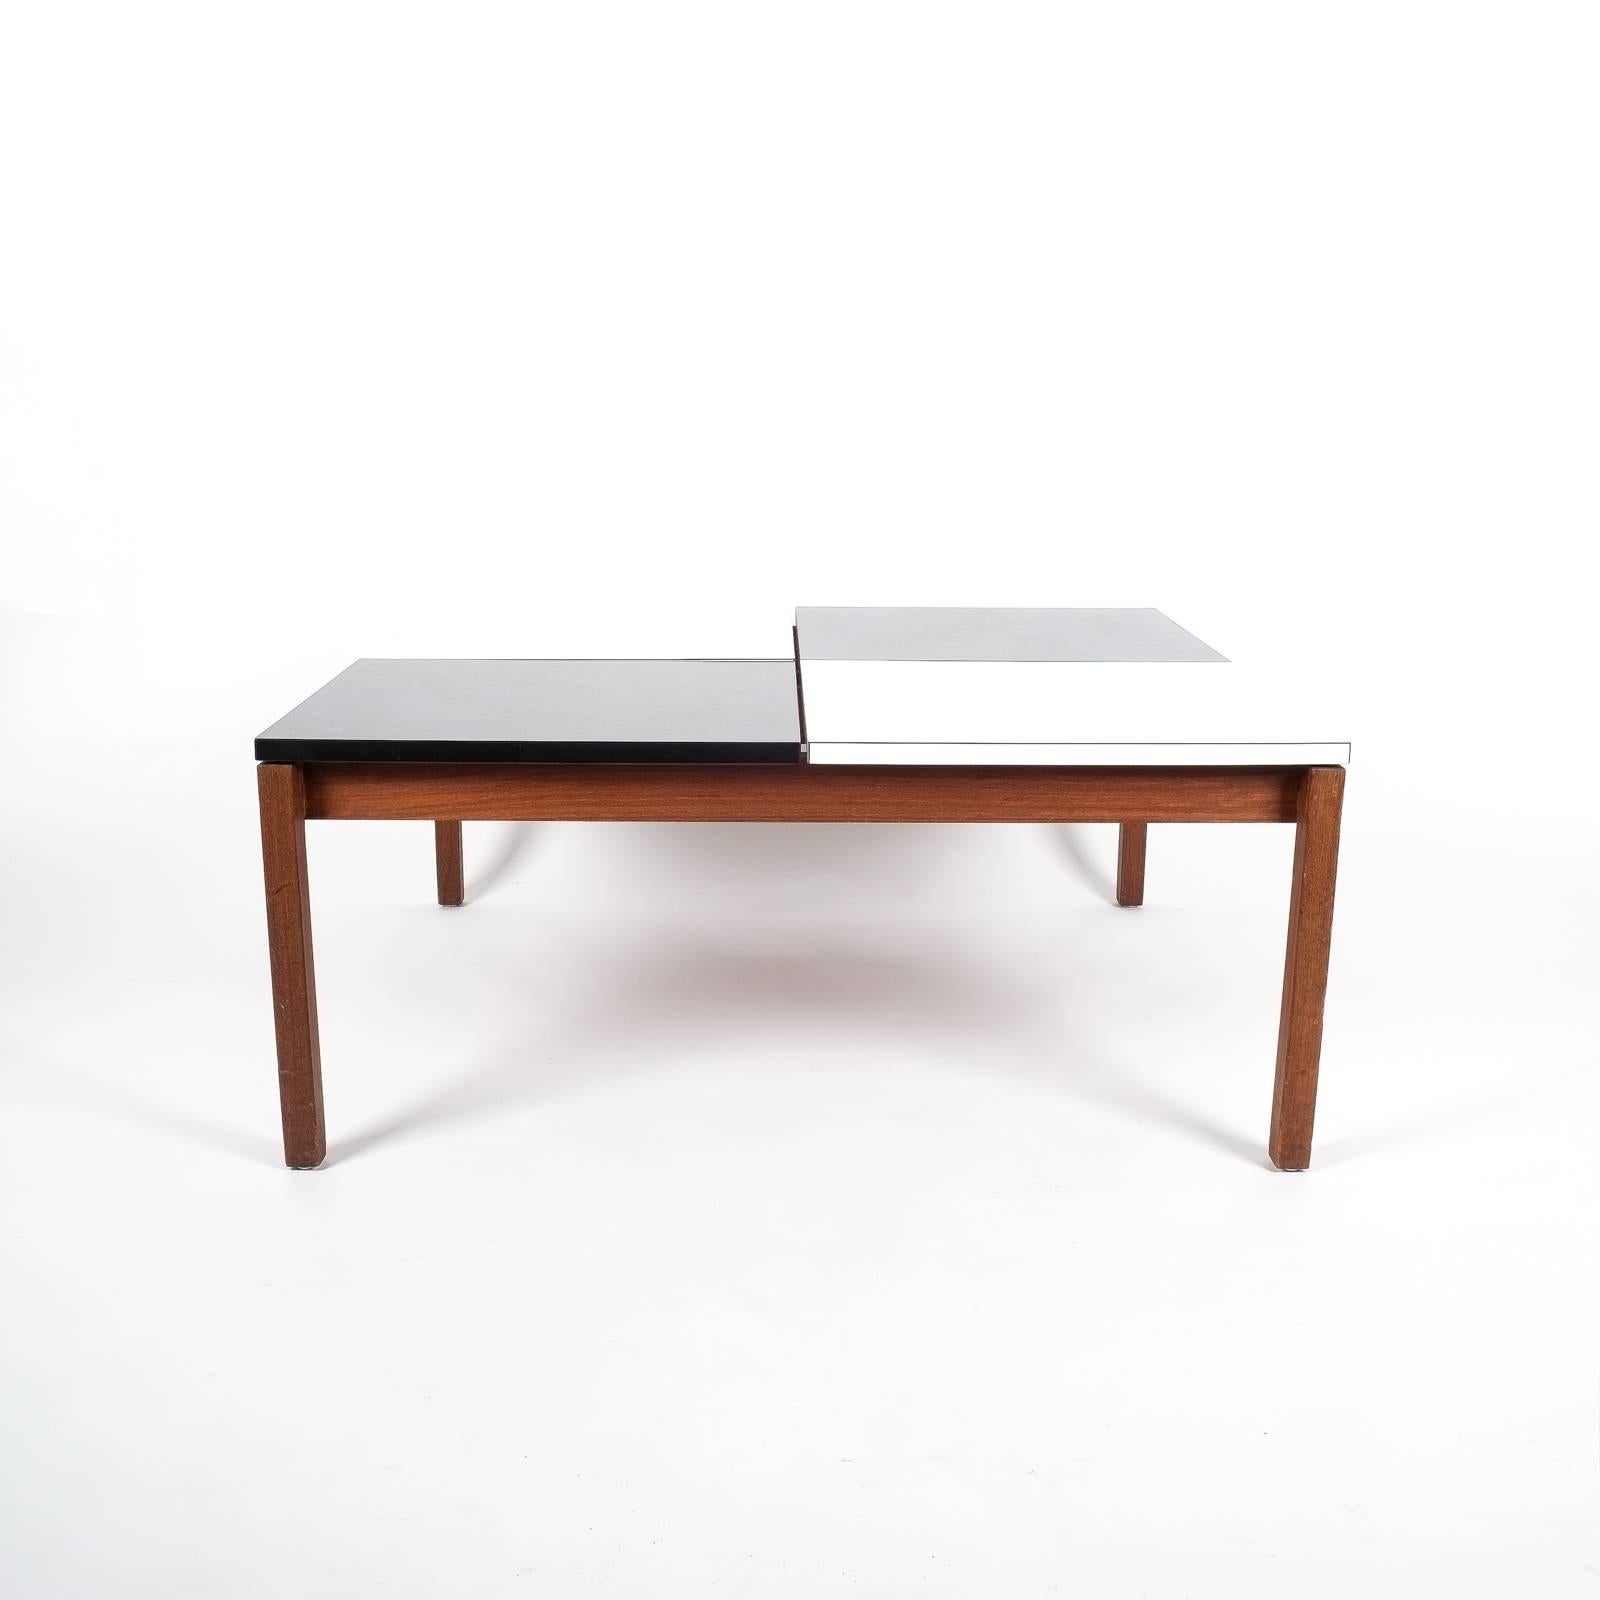 Couchtisch von Lewis Butler für Knoll International, 1960, mit einer segmentierten Tischplatte aus schwarzem und weißem Laminat auf einem Sockel aus Nussbaumholz. Es ist in gutem Zustand und hat keine größeren Mängel. Maße: 37,4 x 33,4 Zoll.
   